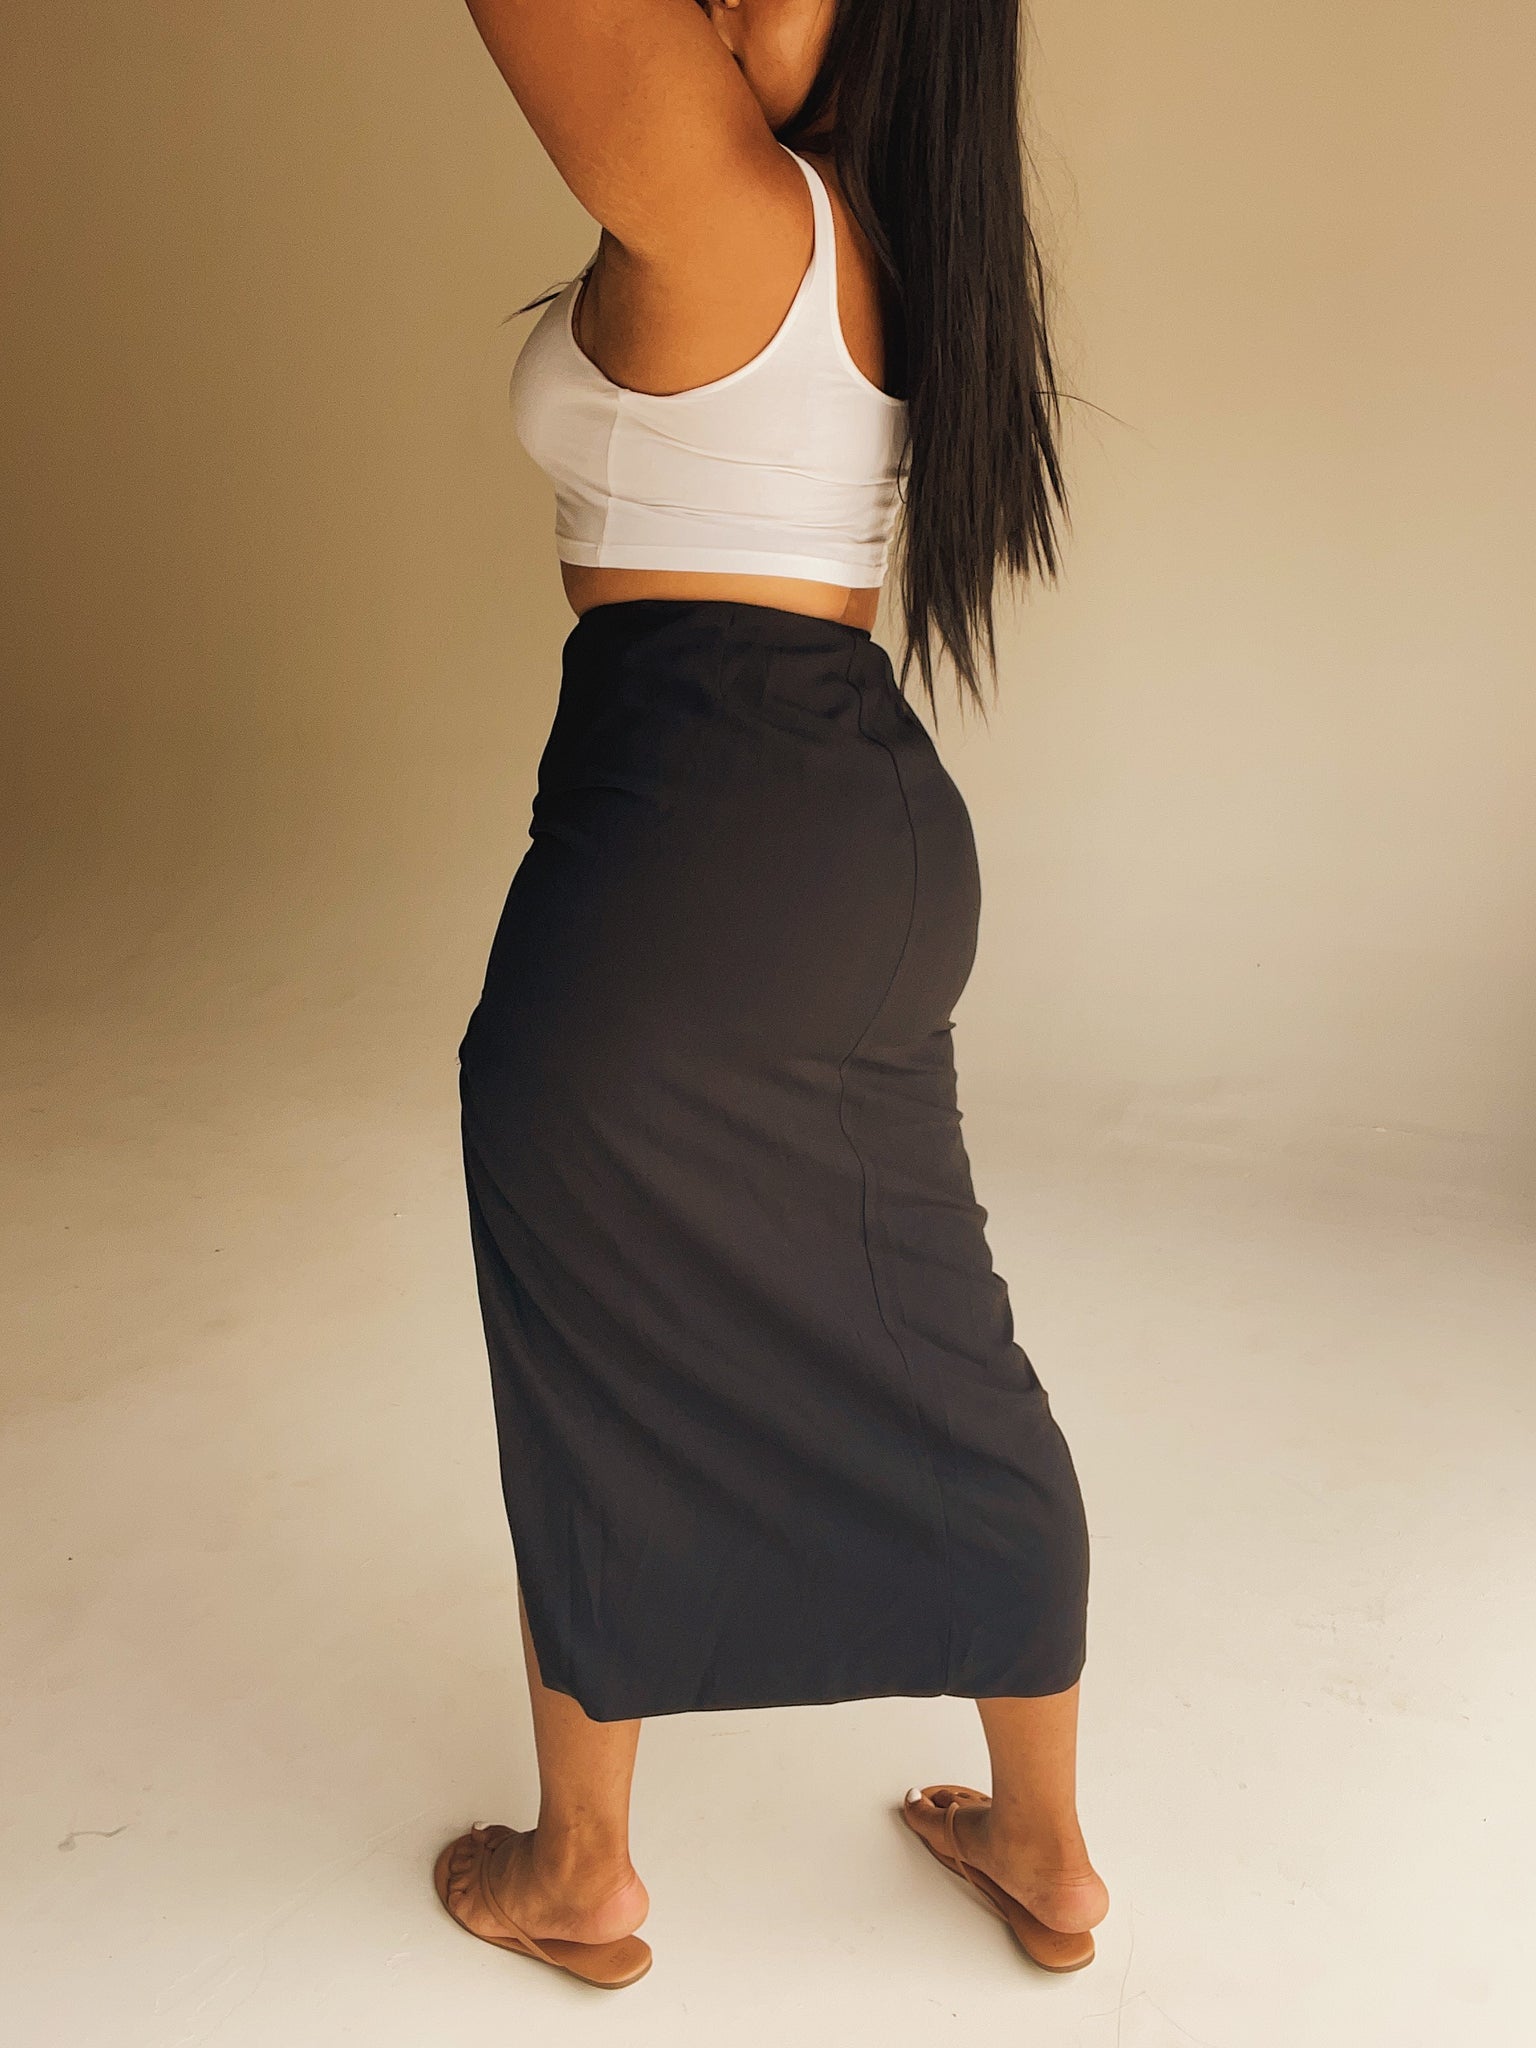 ‘Rian’ Black Thigh-High Slit Skirt (L)